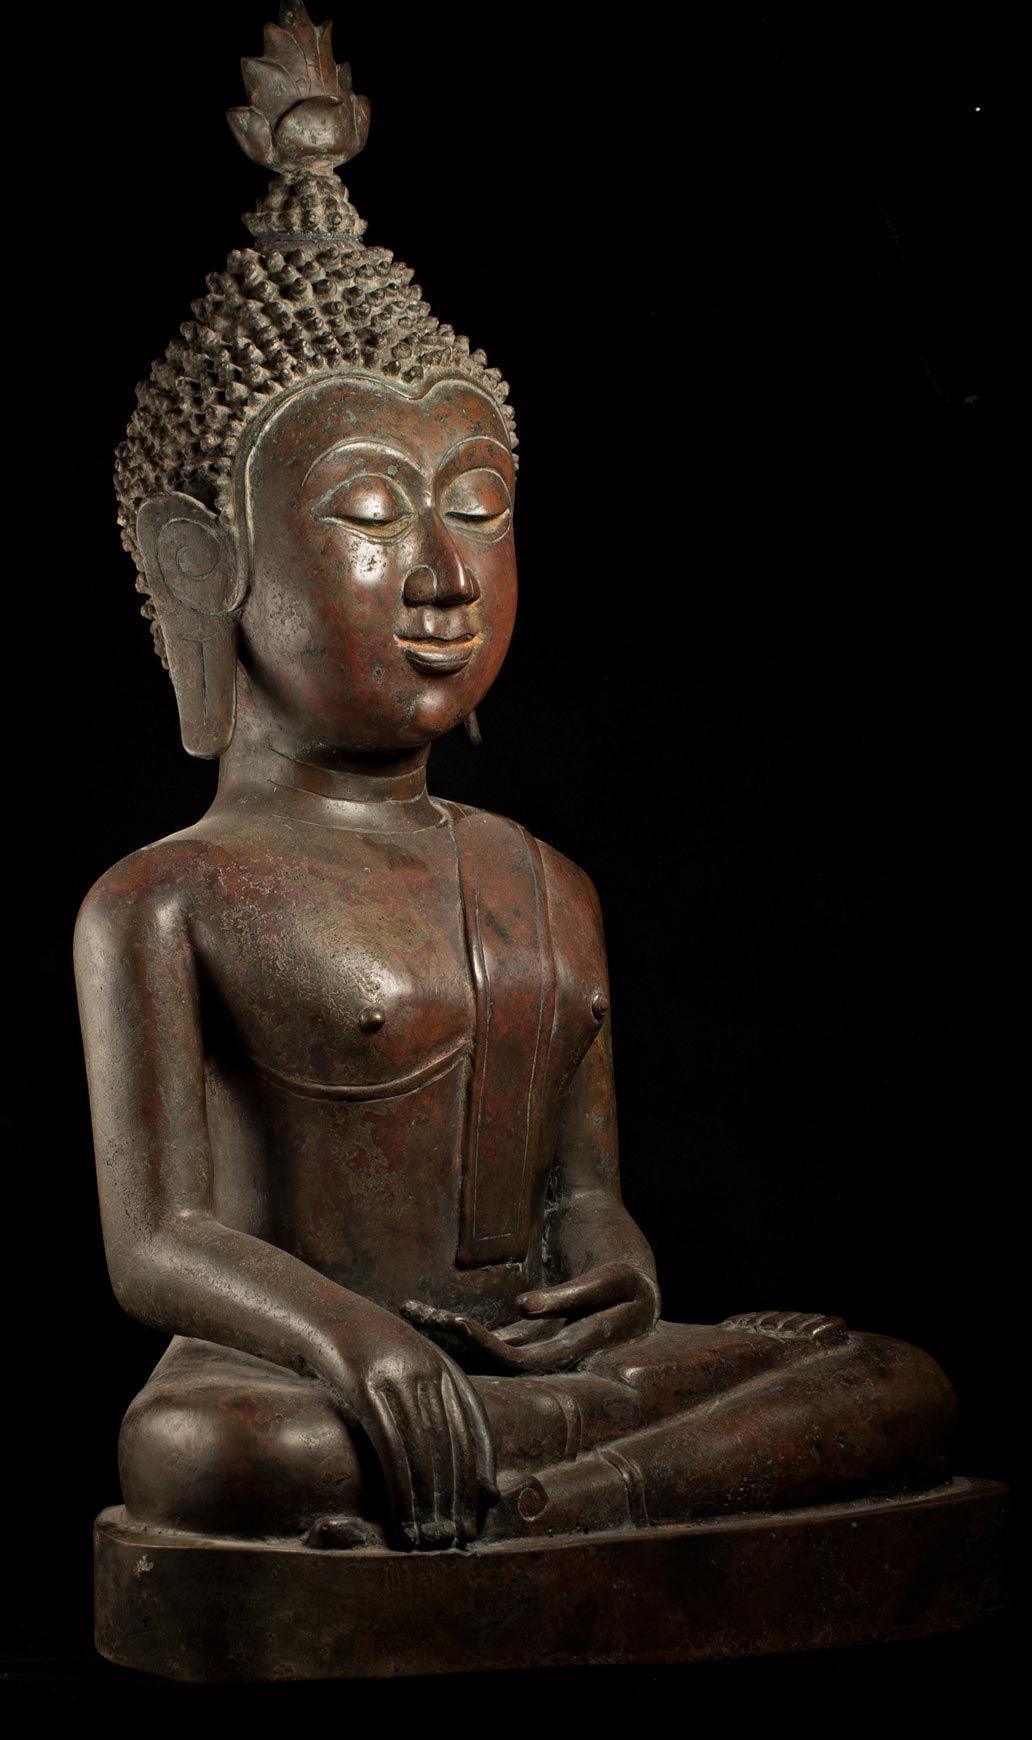 Grand royaume de Bouddha en bronze du 18/19e siècle de Nan dans le nord-est de la Thaïlande - 8961 1